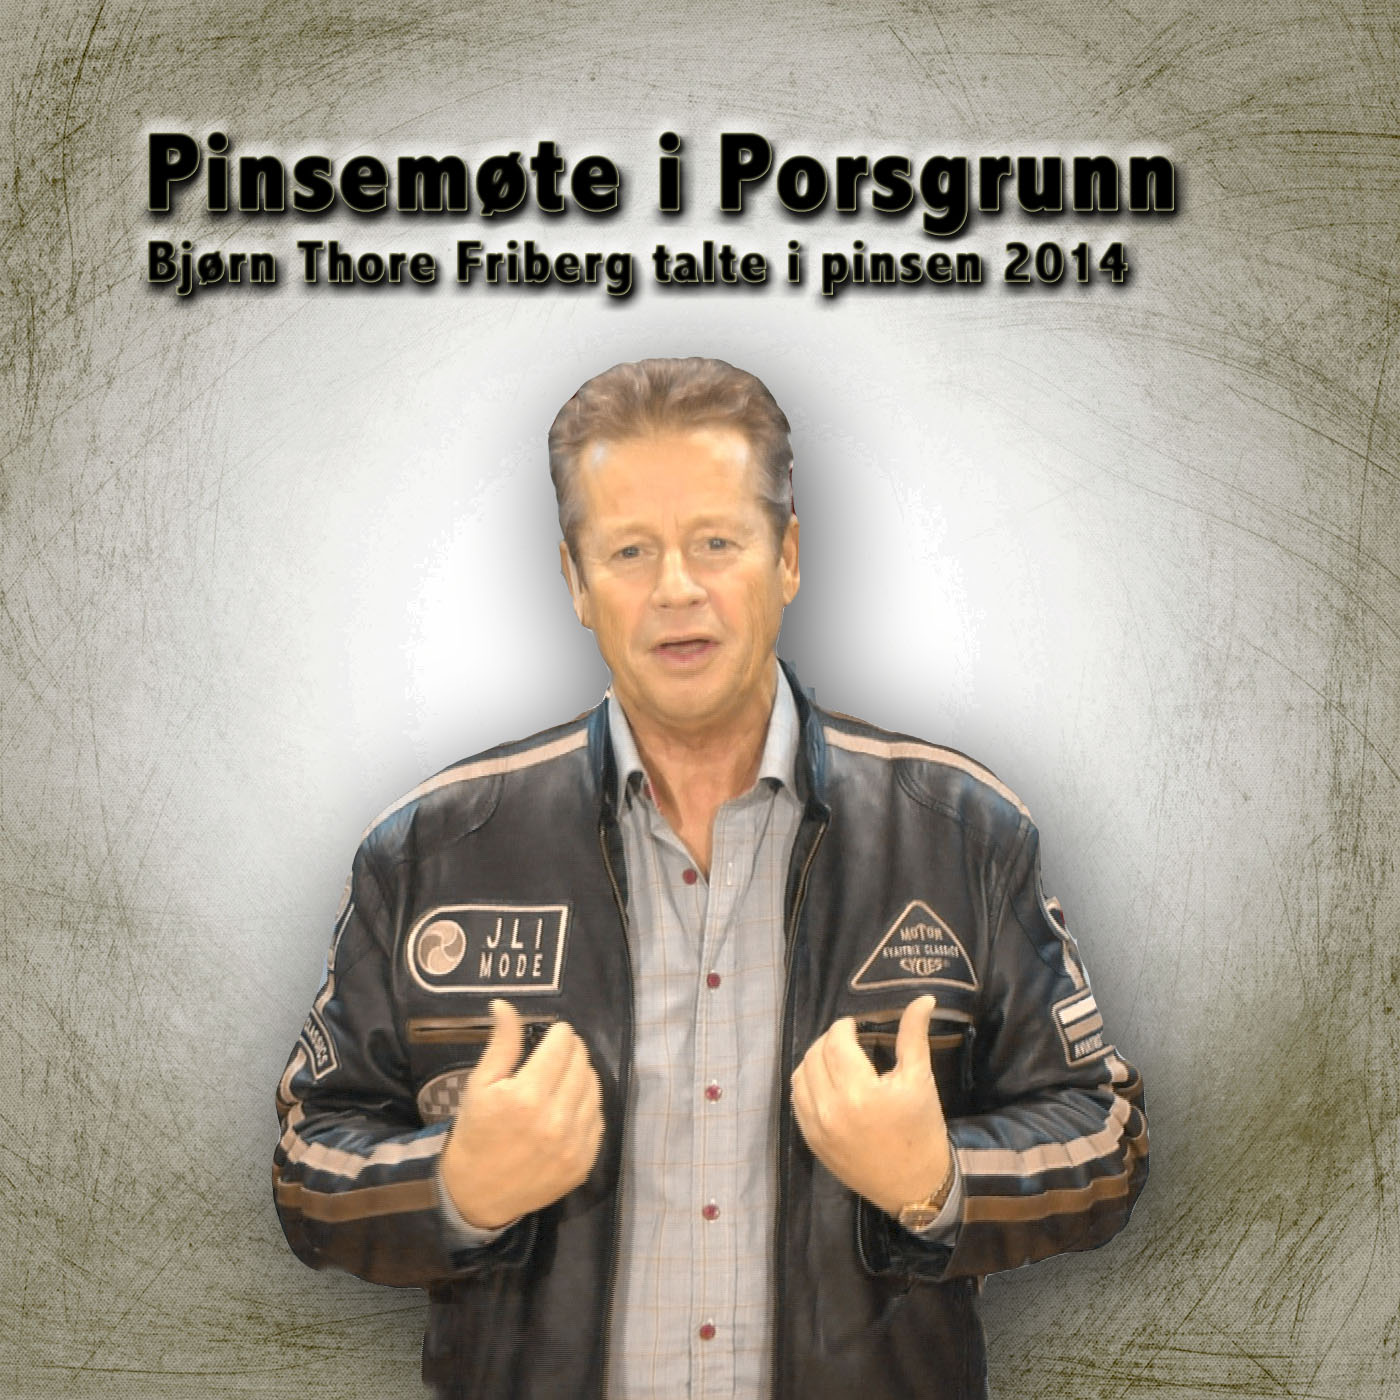 Pinse møte i Porsgrunn  2014